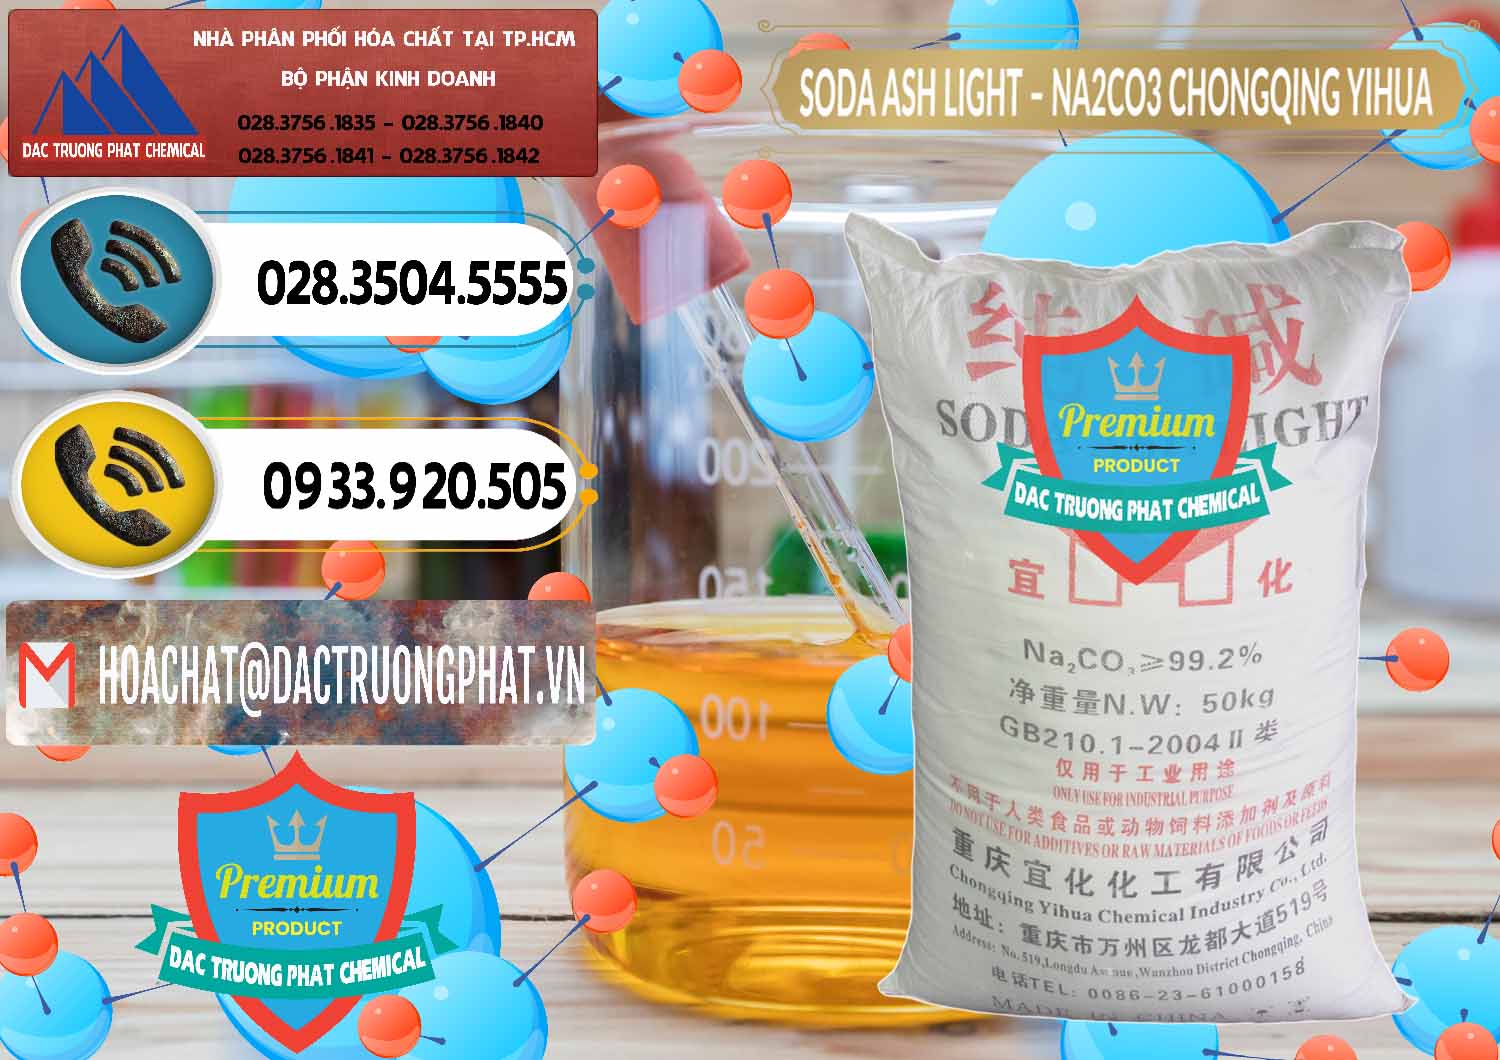 Nơi bán & phân phối Soda Ash Light - NA2CO3 Chongqing Yihua Trung Quốc China - 0129 - Công ty chuyên bán - cung cấp hóa chất tại TP.HCM - hoachatdetnhuom.vn